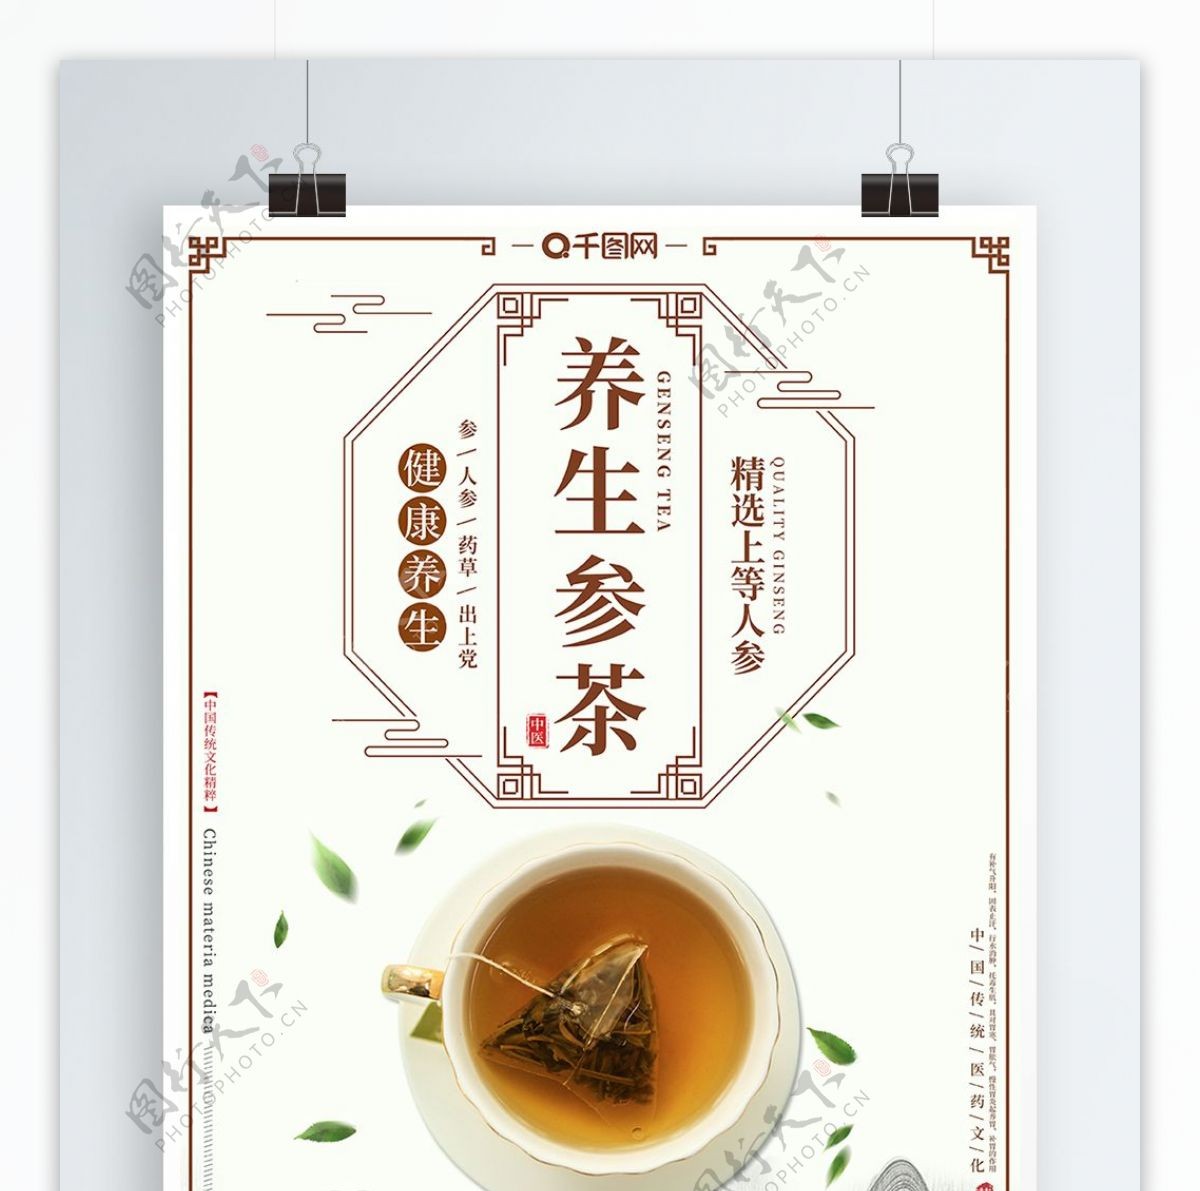 养生参茶中式风格海报